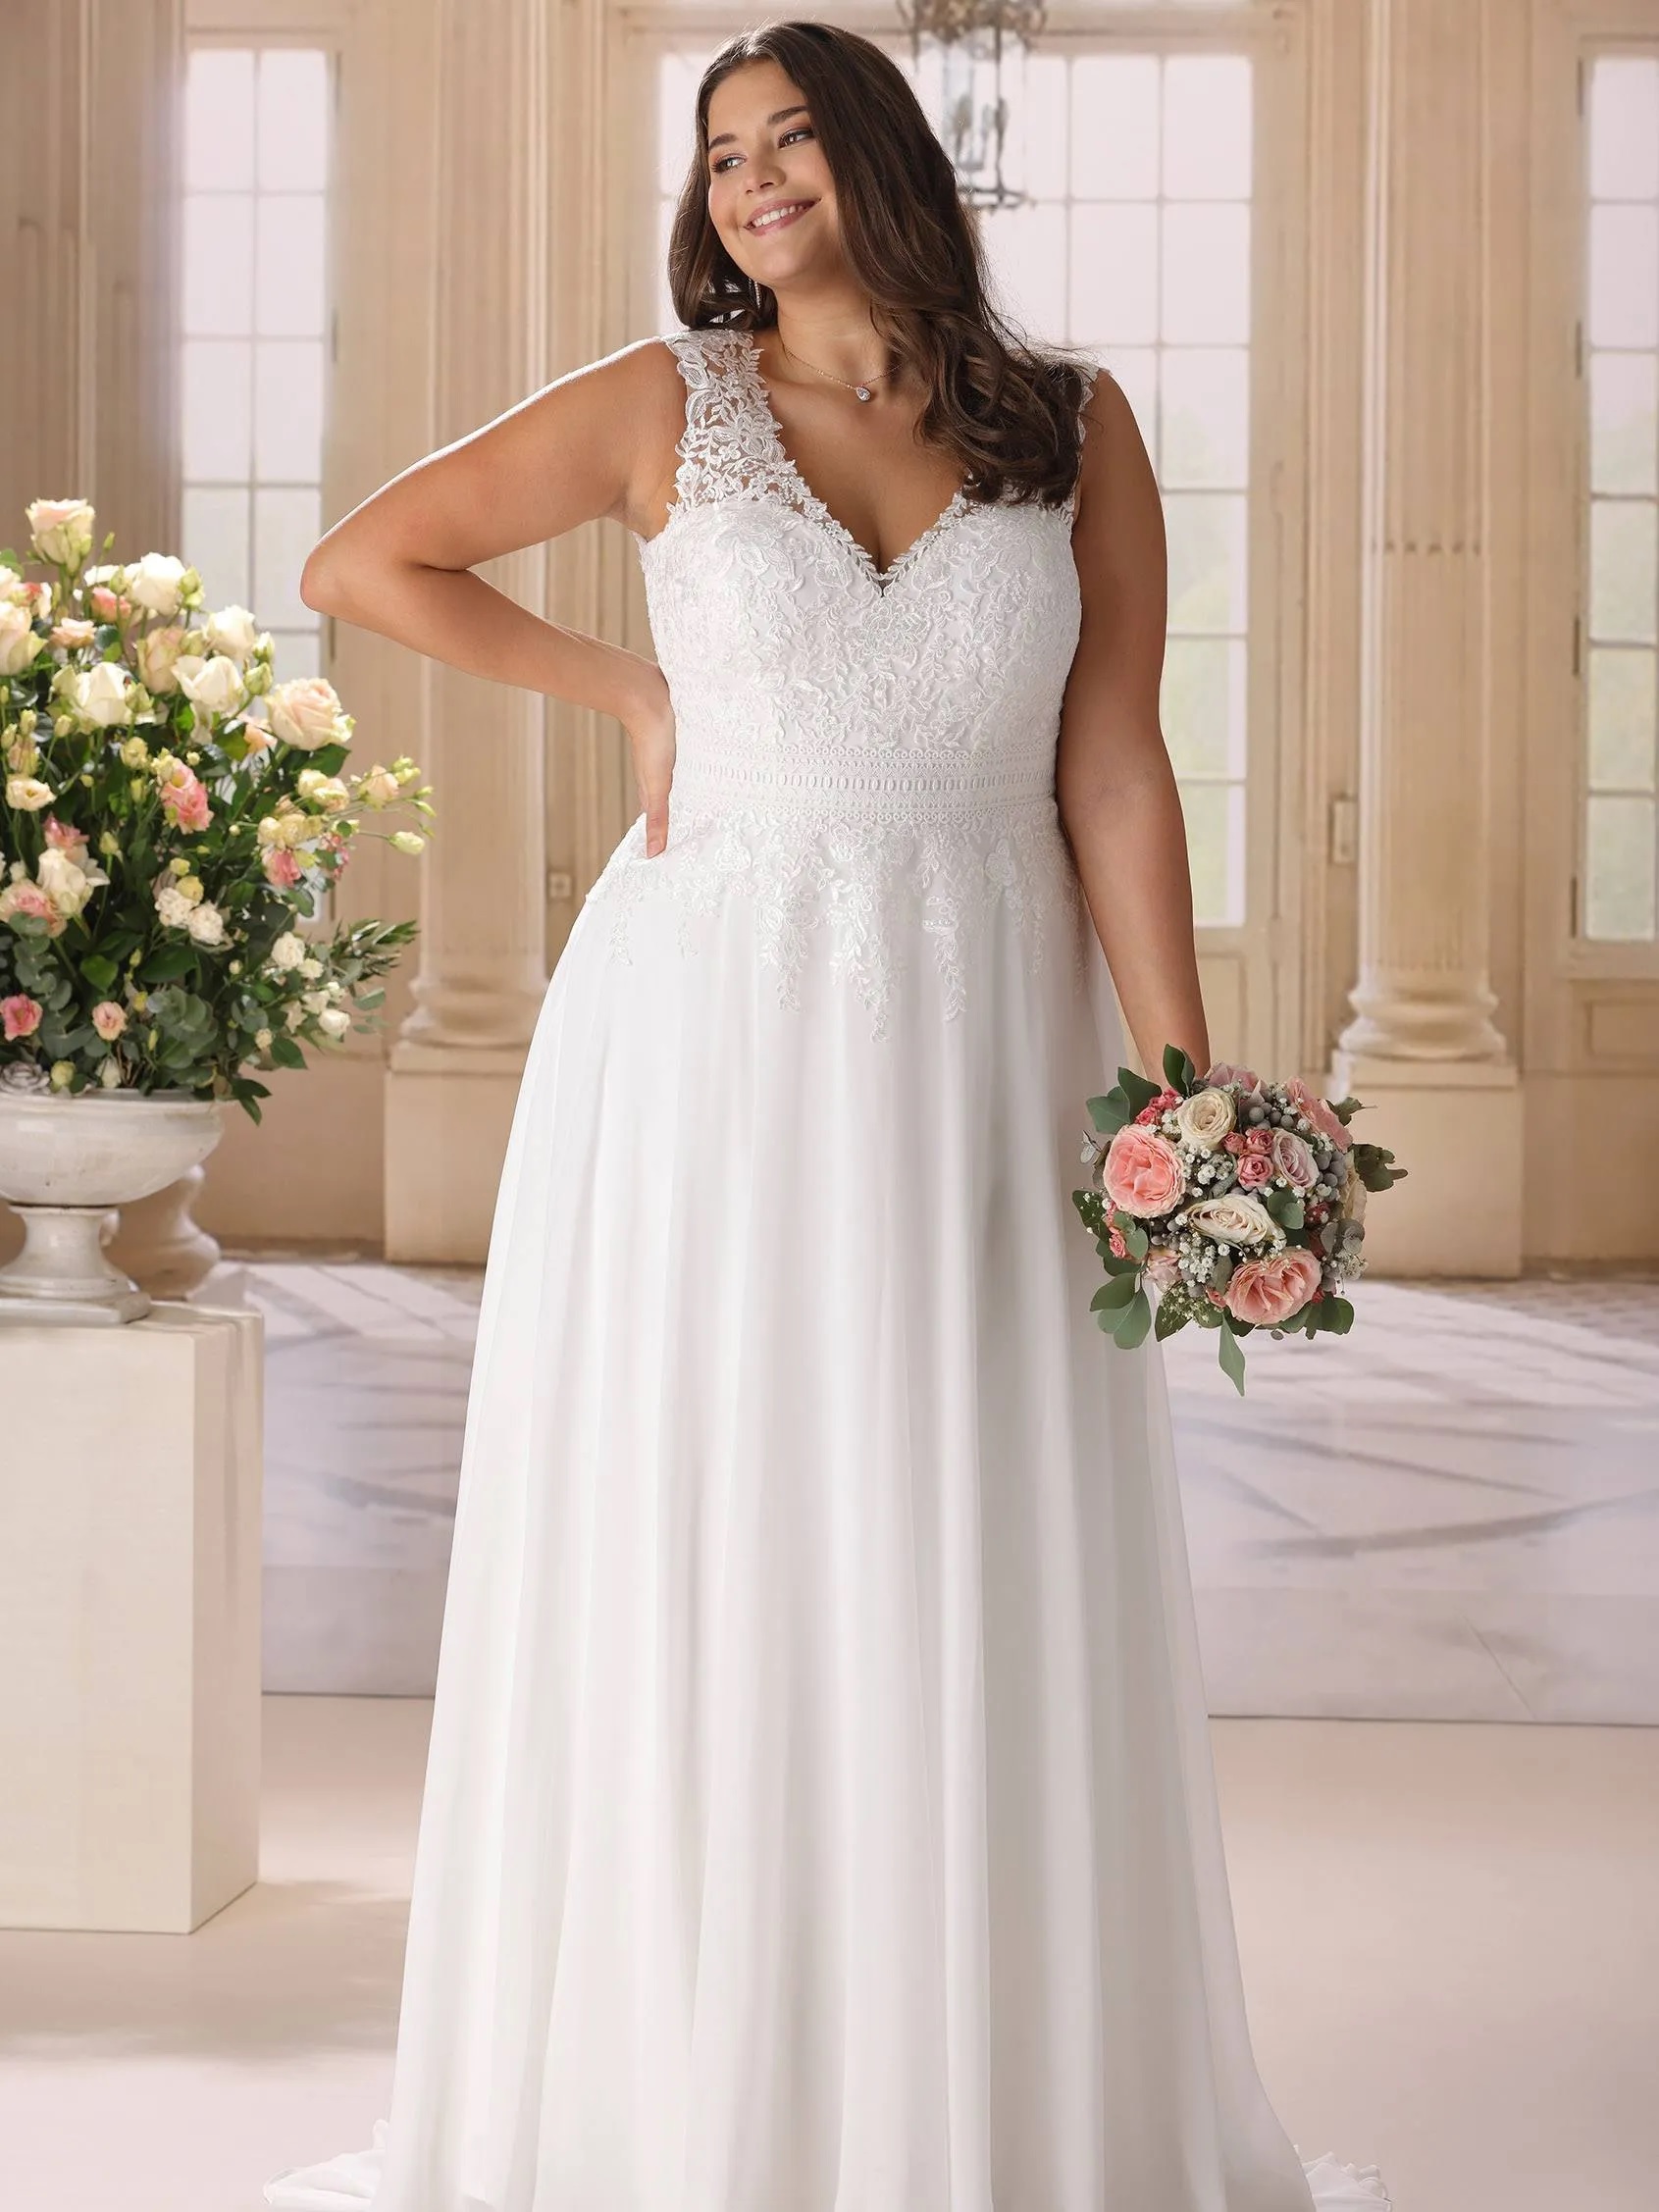 Vestido-novia-plus-size-pronovias-modelo-estel-sublime-wedding-shop